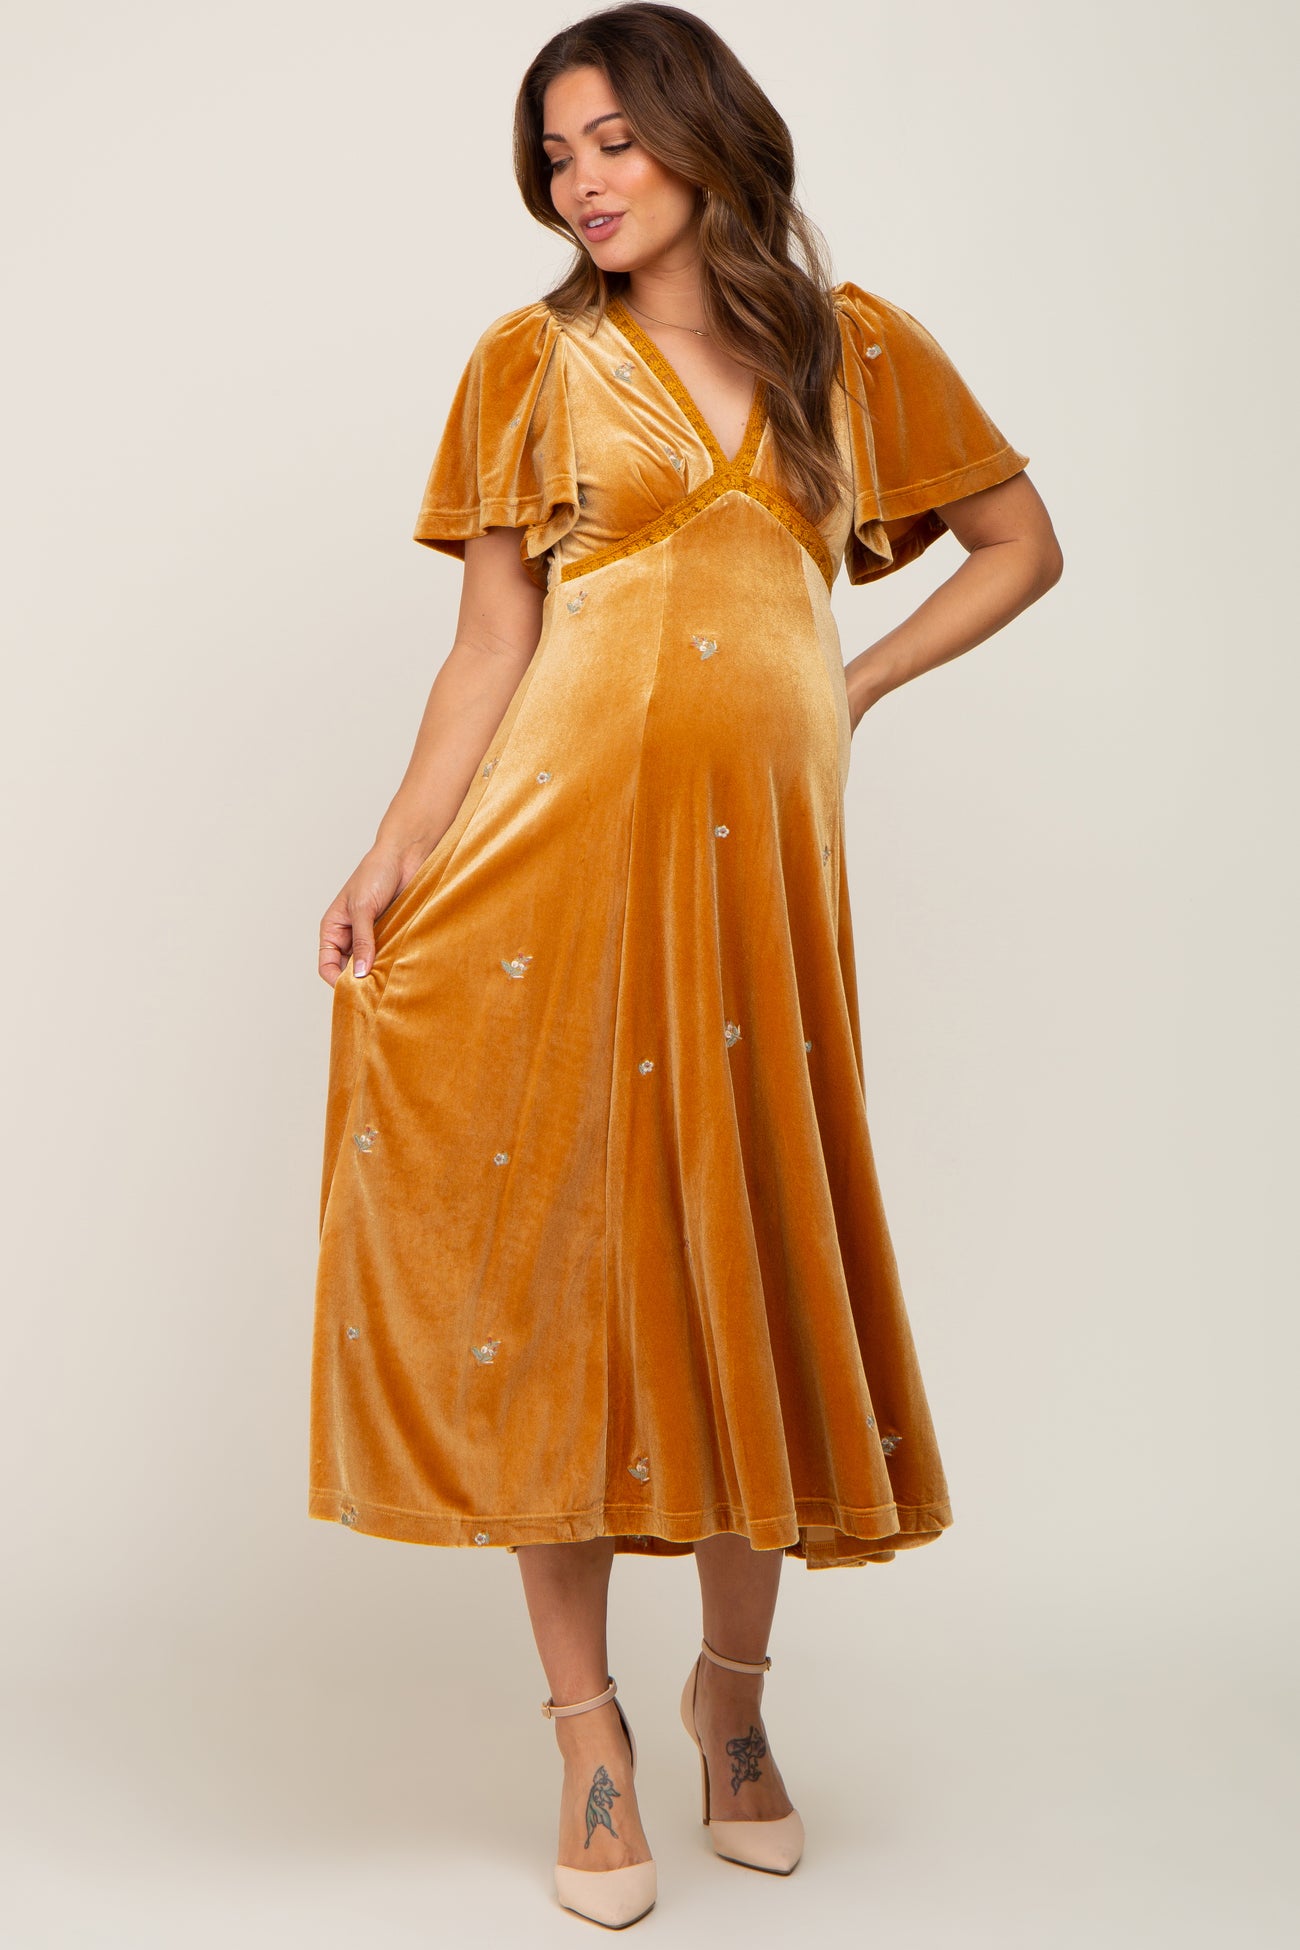 Leafy Gold Embellished Maternity & Nursing Dress–